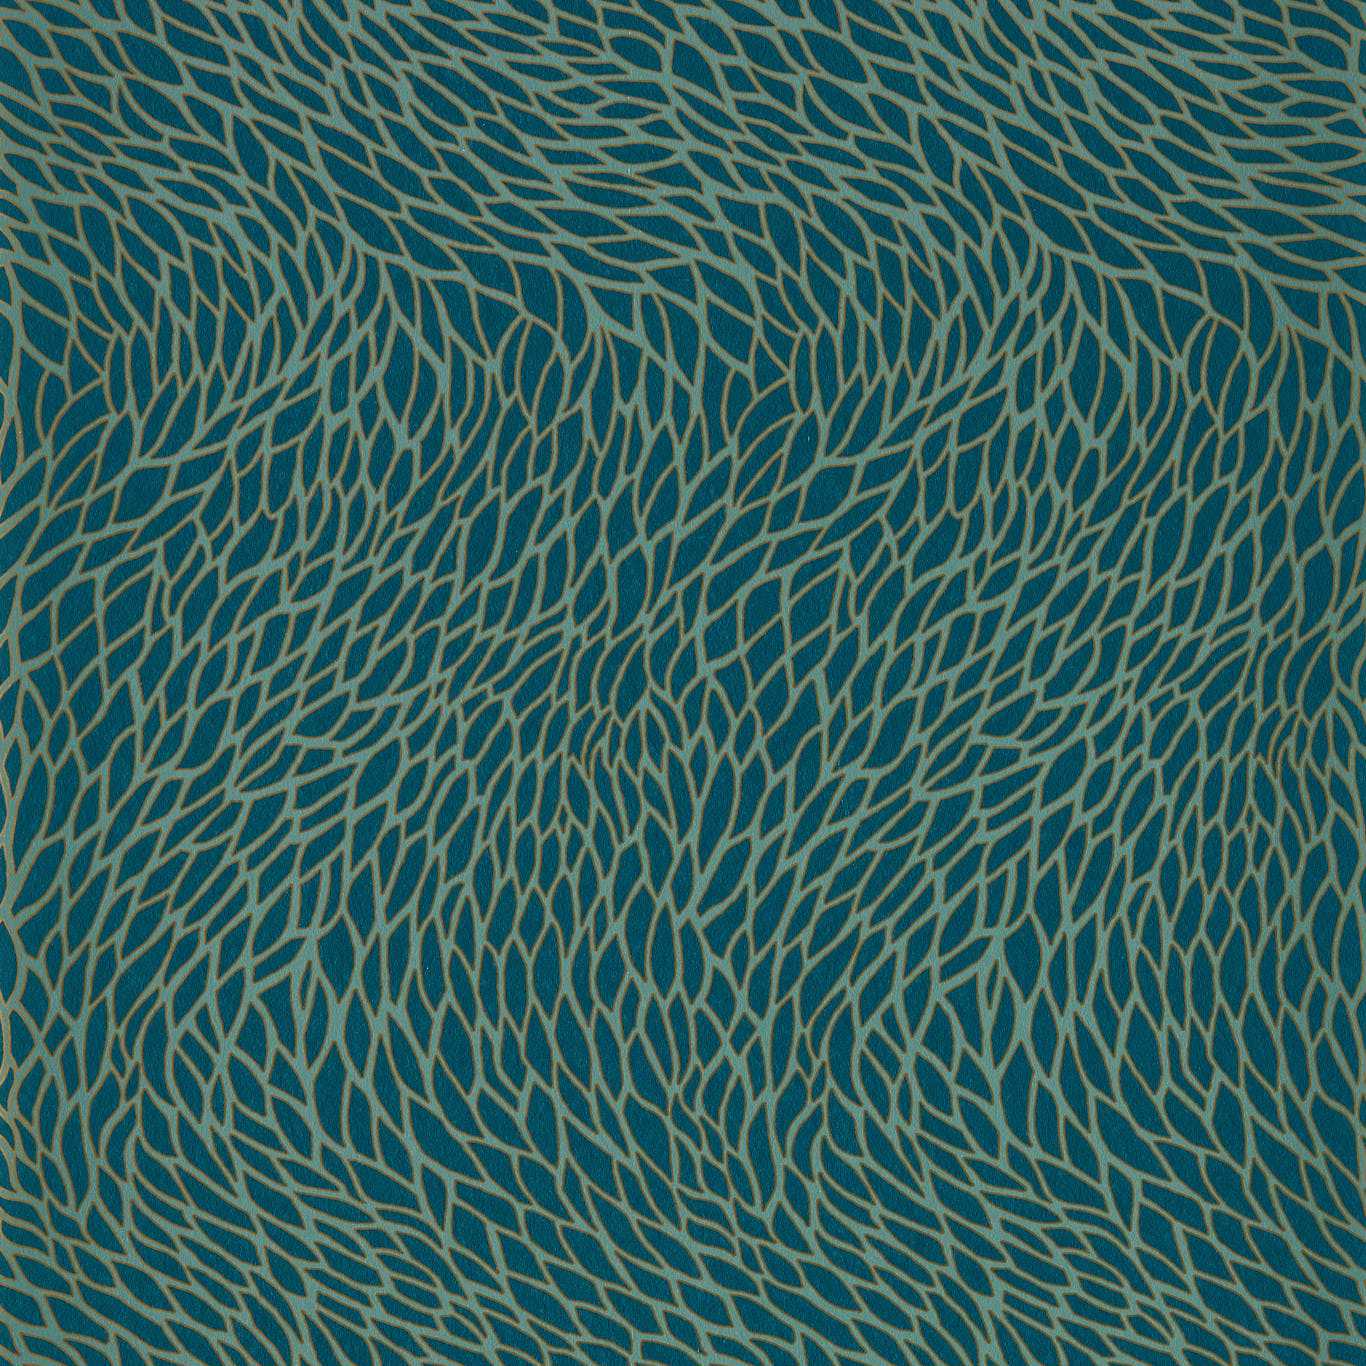 Corallino Teal Wallpaper W0166/03 by Clarke & Clarke